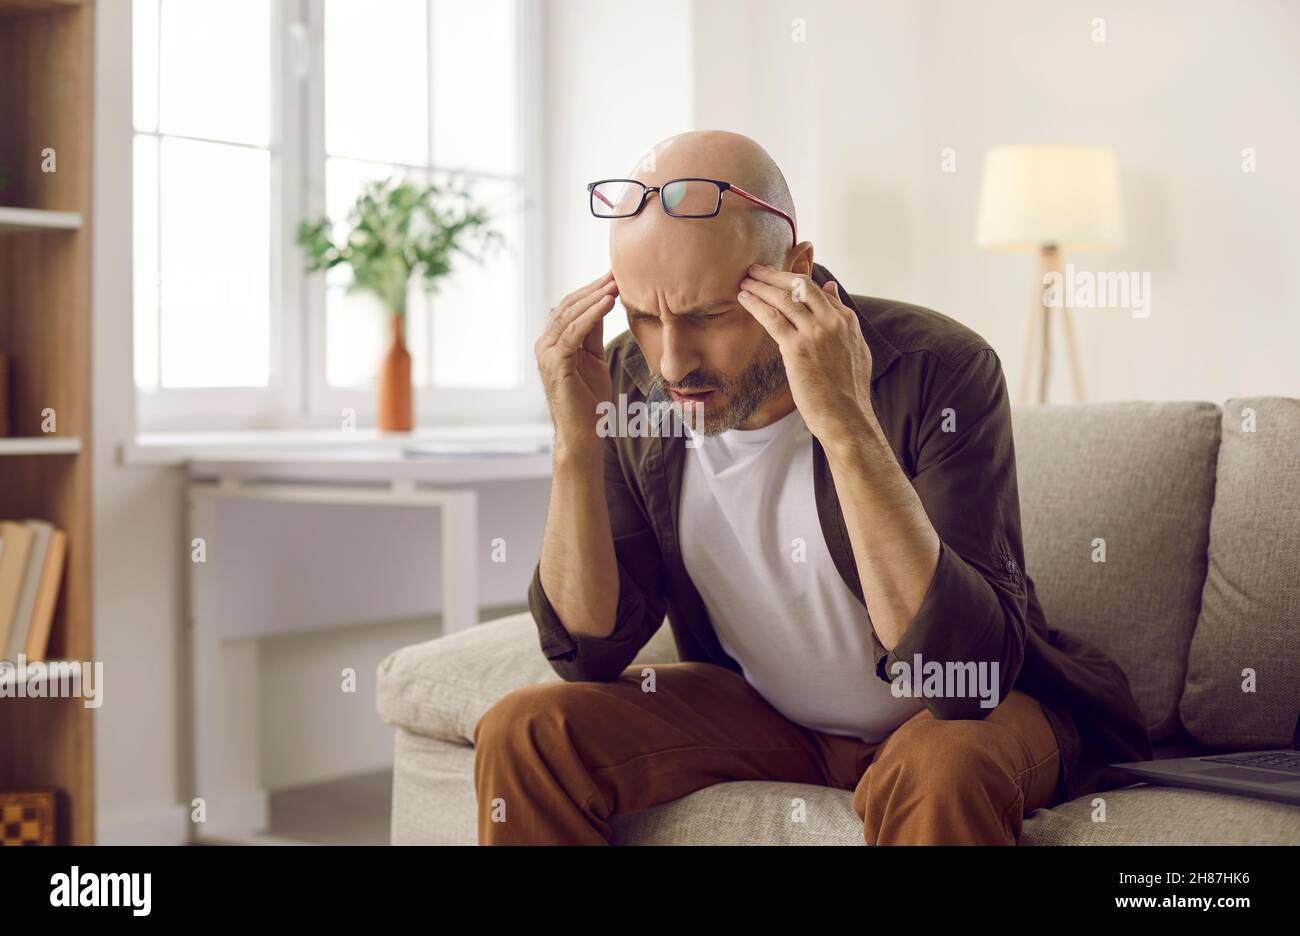 Verwirrt Mann auf der Couch sitzen und denken versuchen, etwas zu verstehen oder sich daran zu erinnern Stockfoto